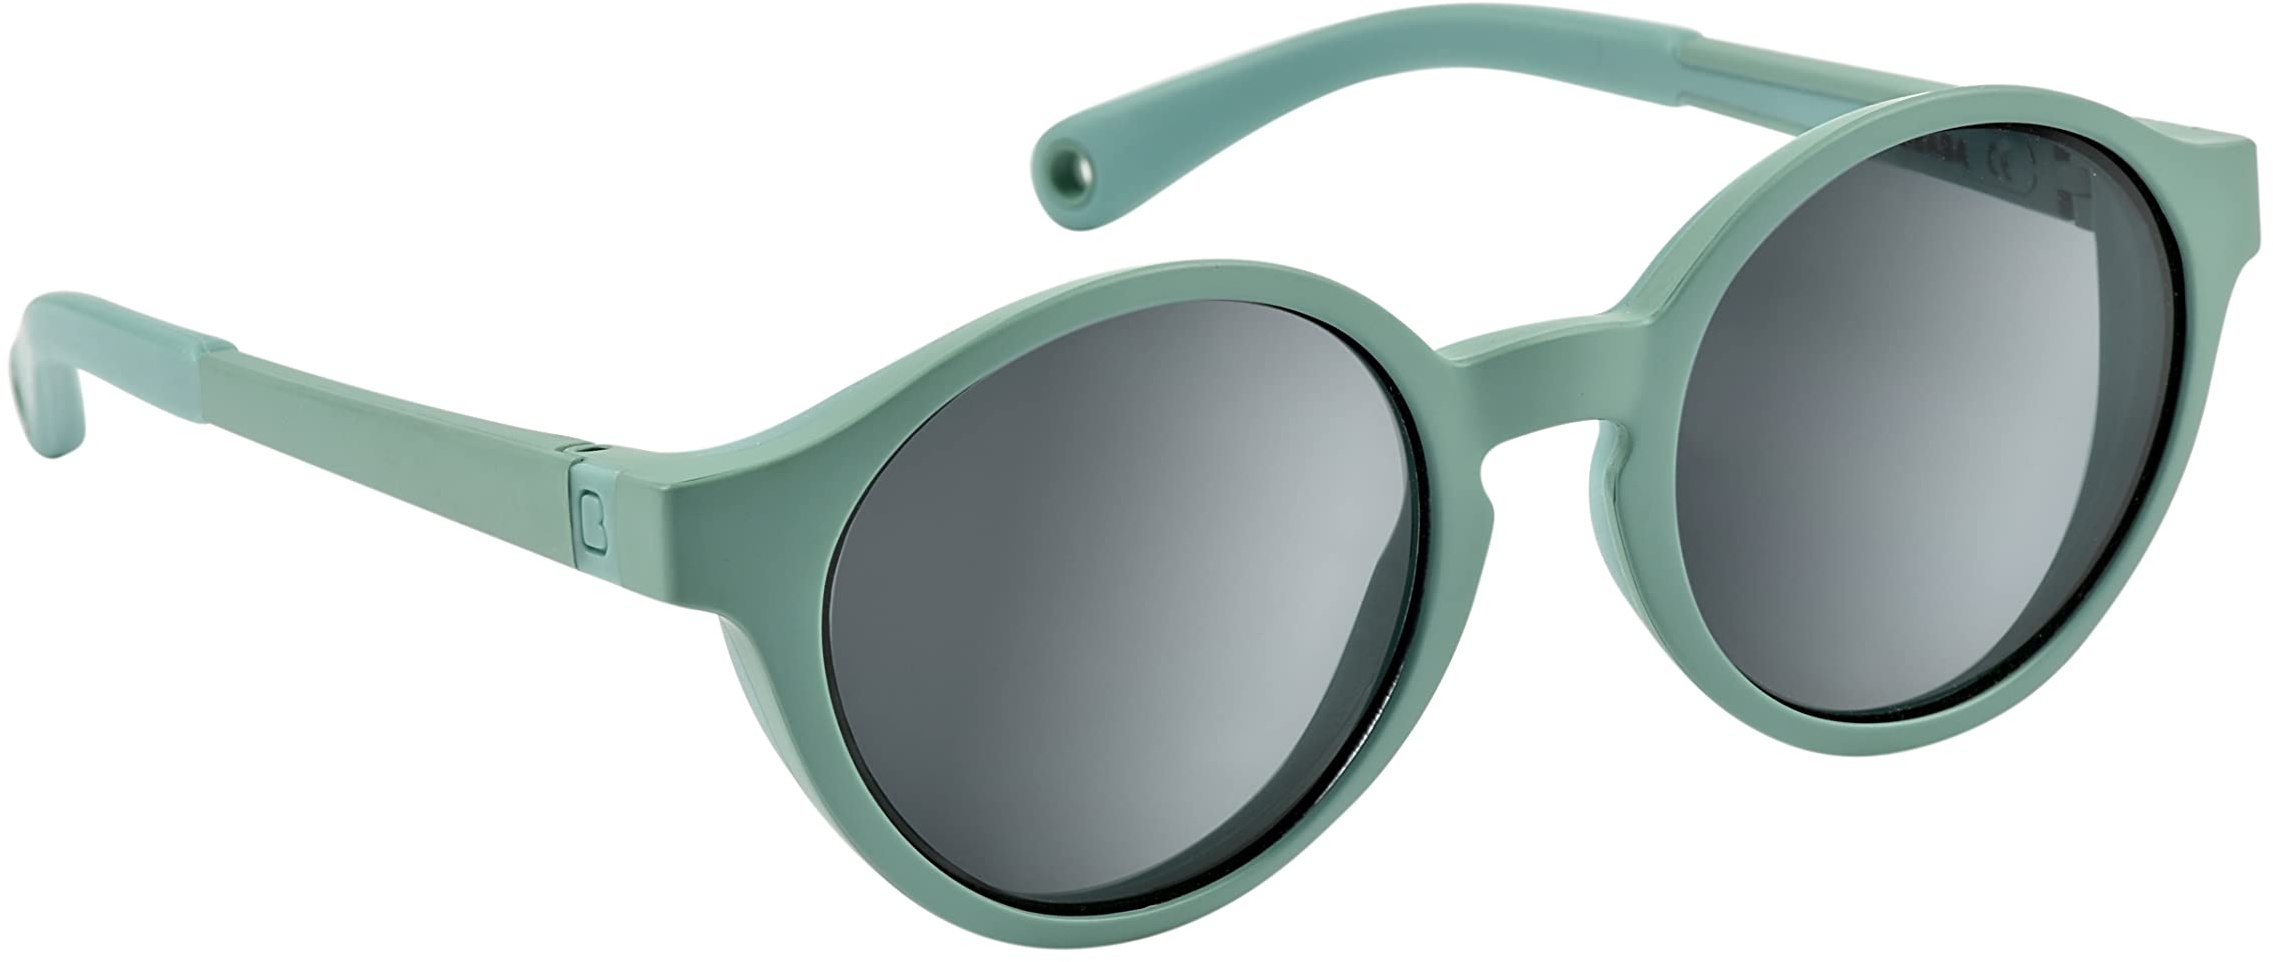 Béaba, Sonnenbrille für Kinder 2-4 Jahre, 100% UV-Schutz – CAT 3, Seitenschutz, optimaler Komfort, 360° verstellbare Bügel, Tropical Green